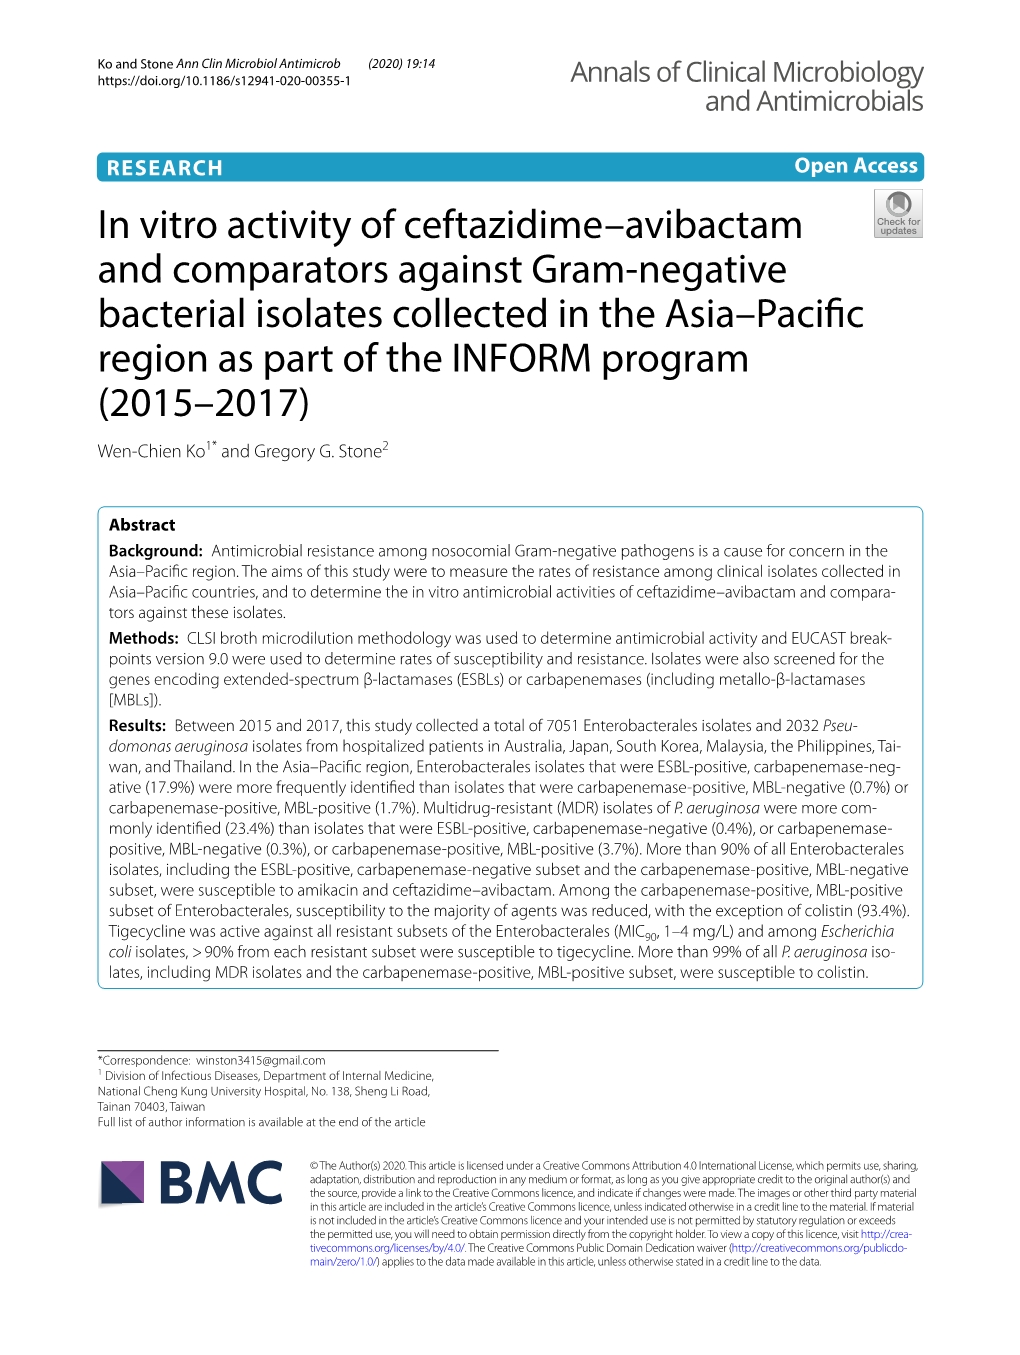 In Vitro Activity of Ceftazidime–Avibactam and Comparators